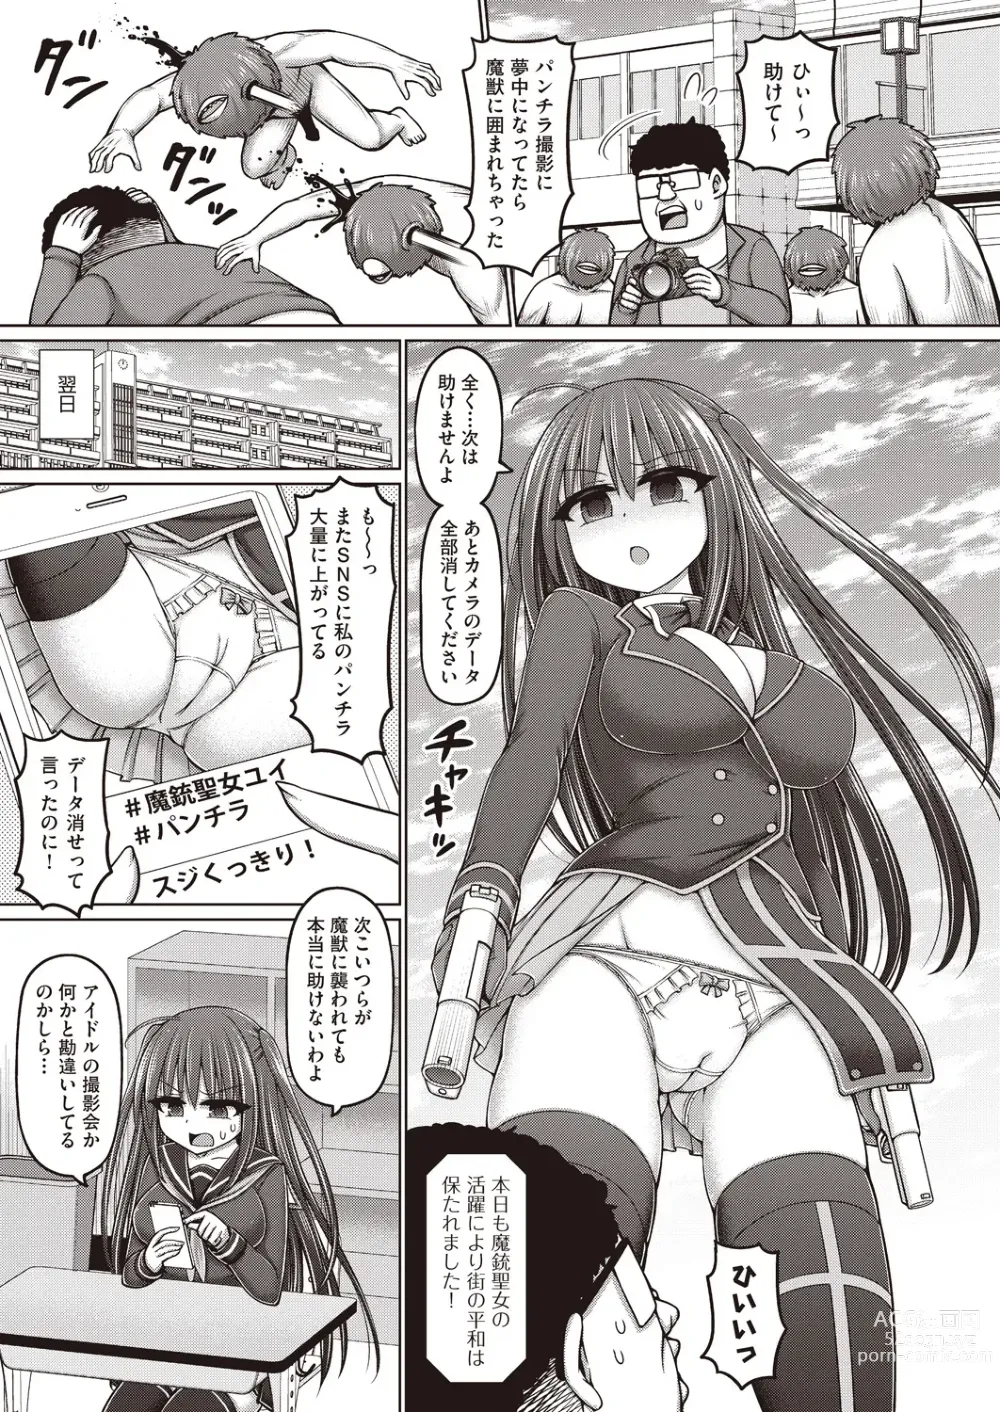 Page 3 of manga Majuu Seijo Yui vs Puroresu Majin Zenpen